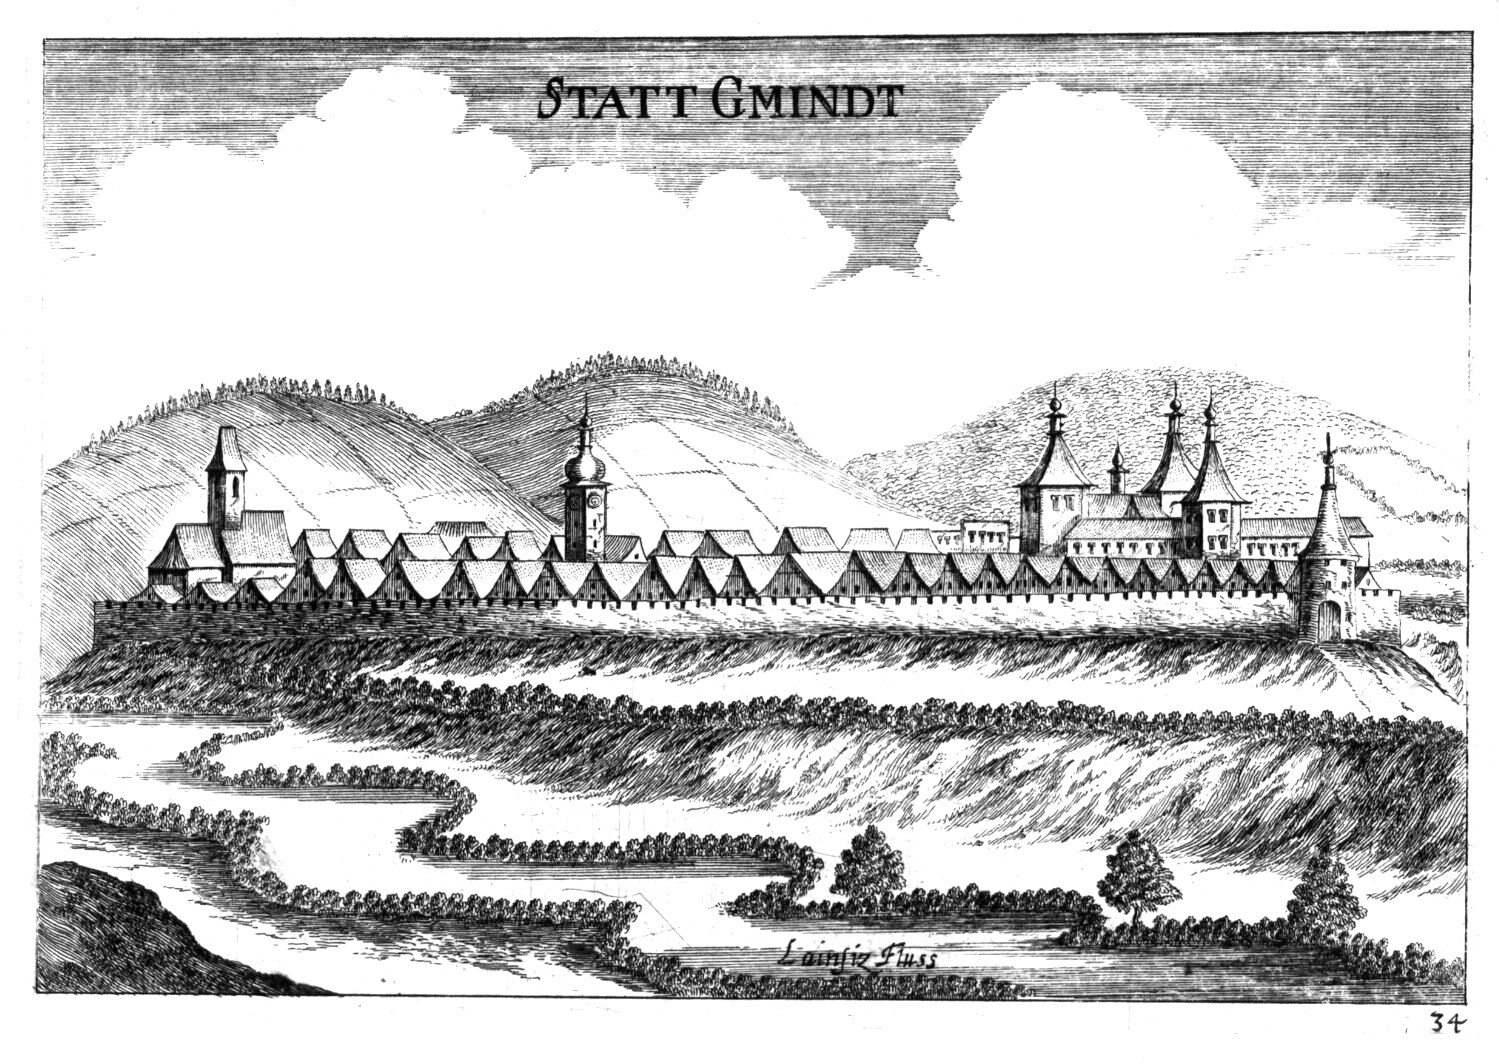 Kupferstich von Gmünd 1672 (G. M. Vischer)